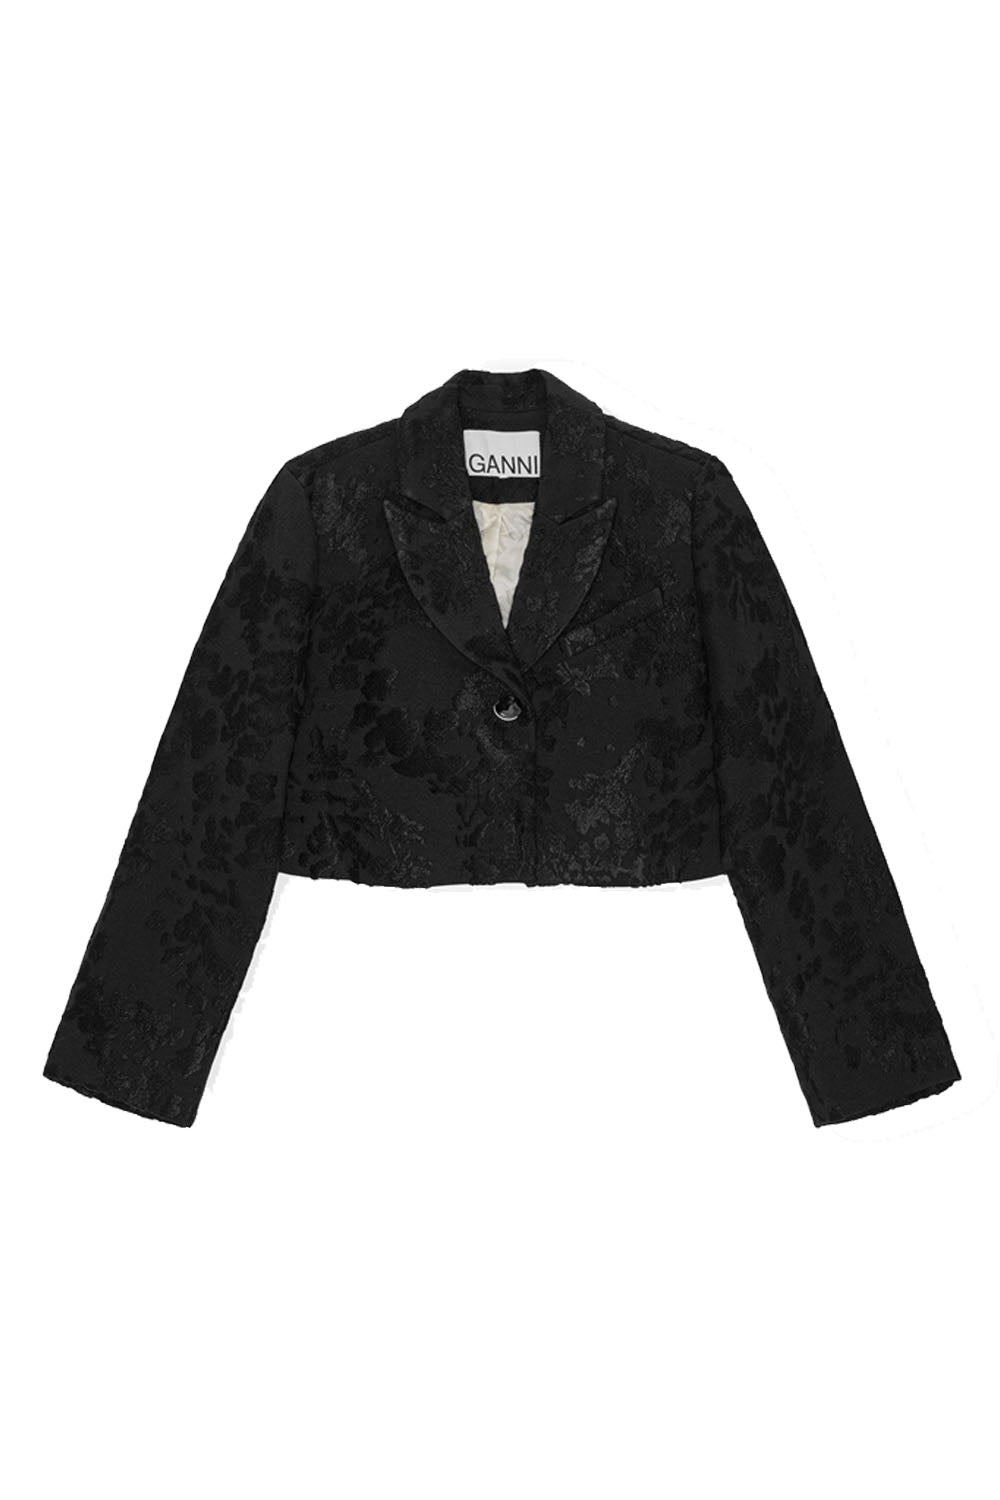 Bouclé Jacquard Suiting Cropped Blazer Black